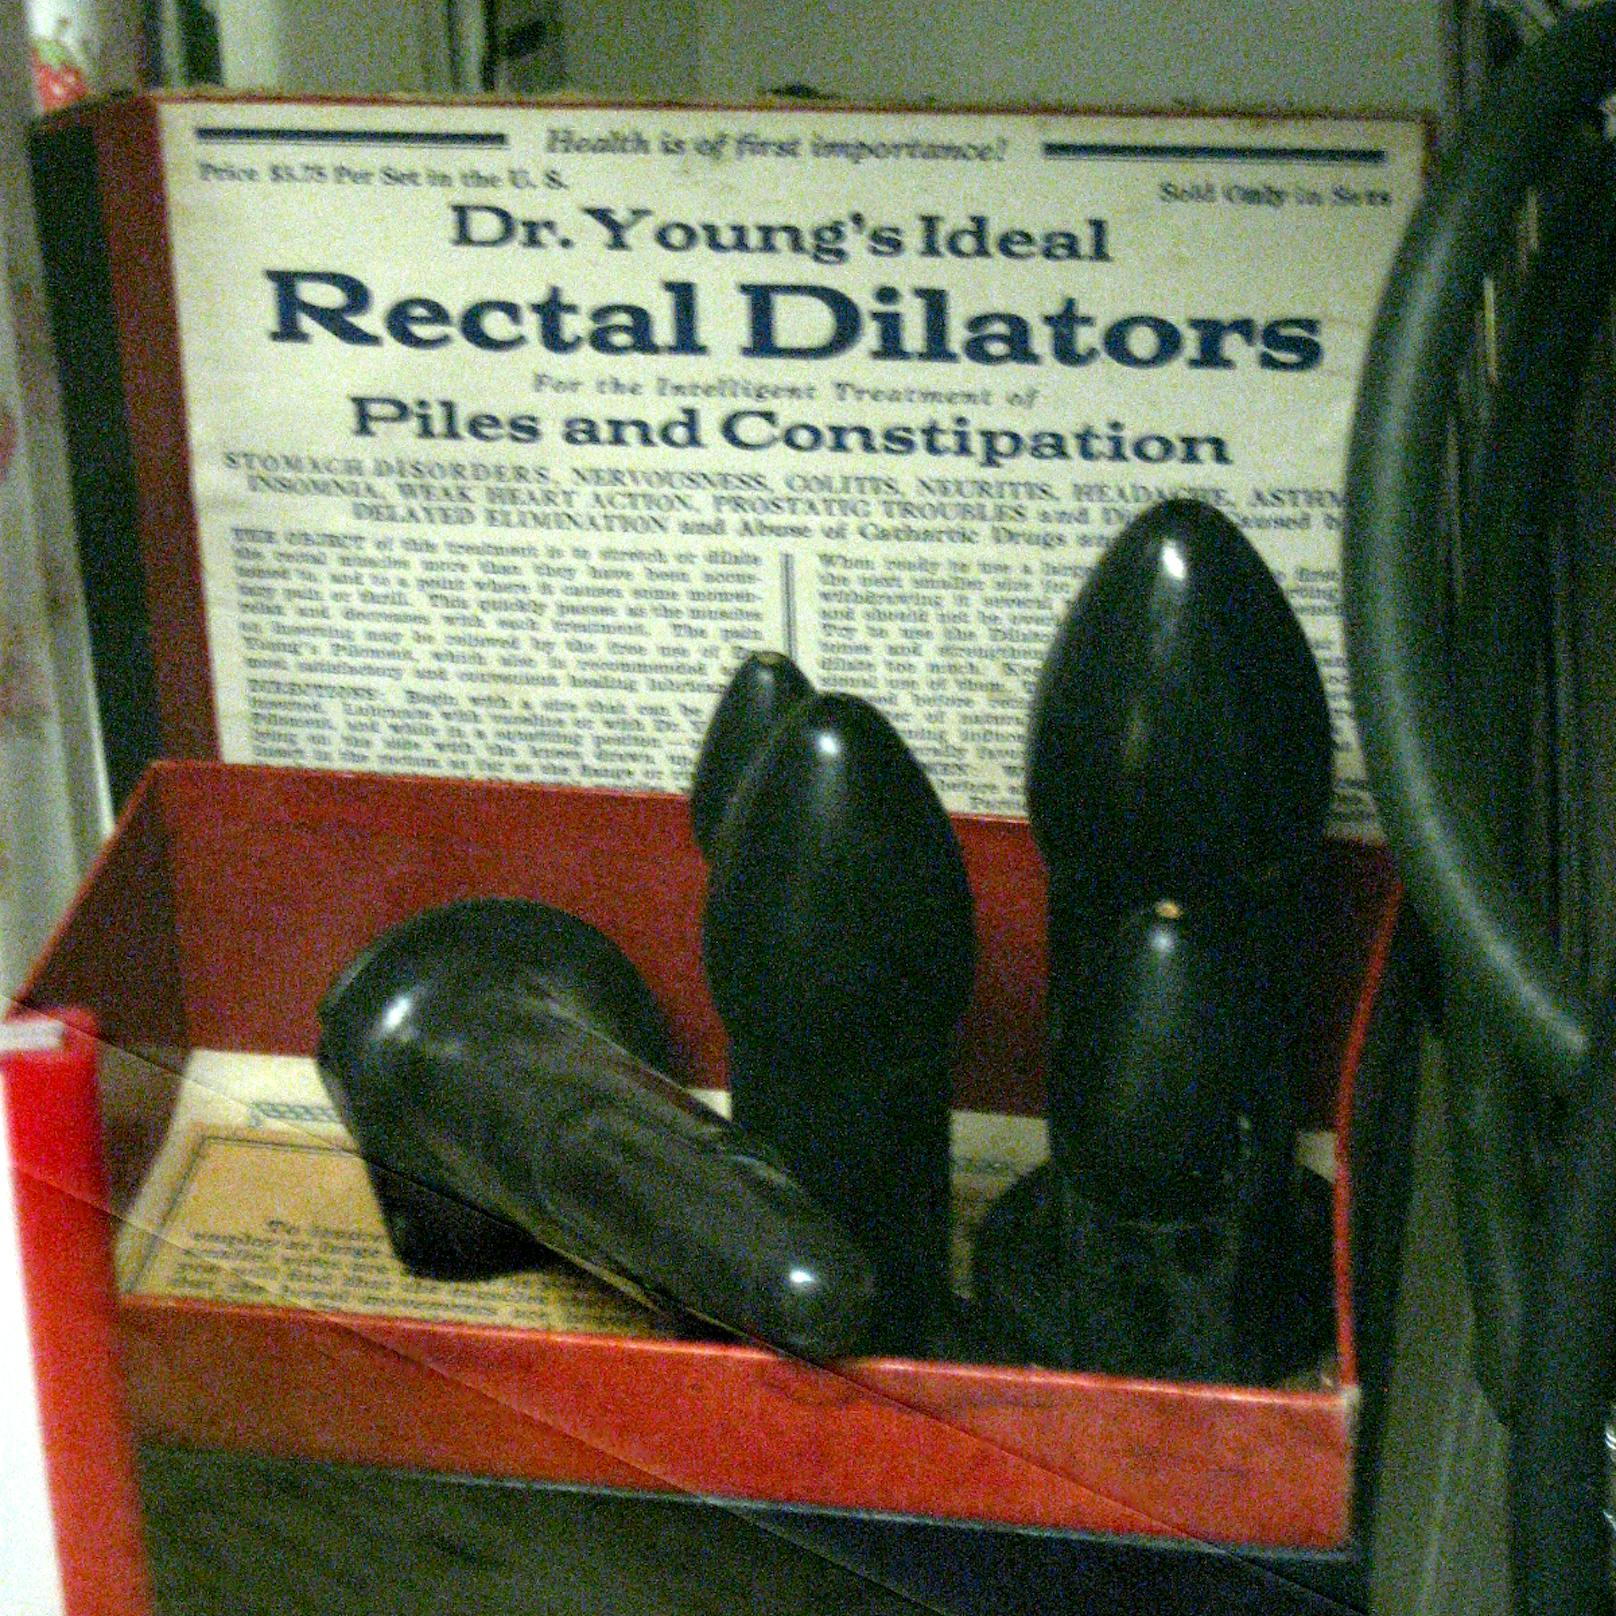 Nach ihm war das Set auch benannt: Es trug die vielversprechende Bezeichnung "Dr. Young’s Ideal Rectal Dilators".<br>